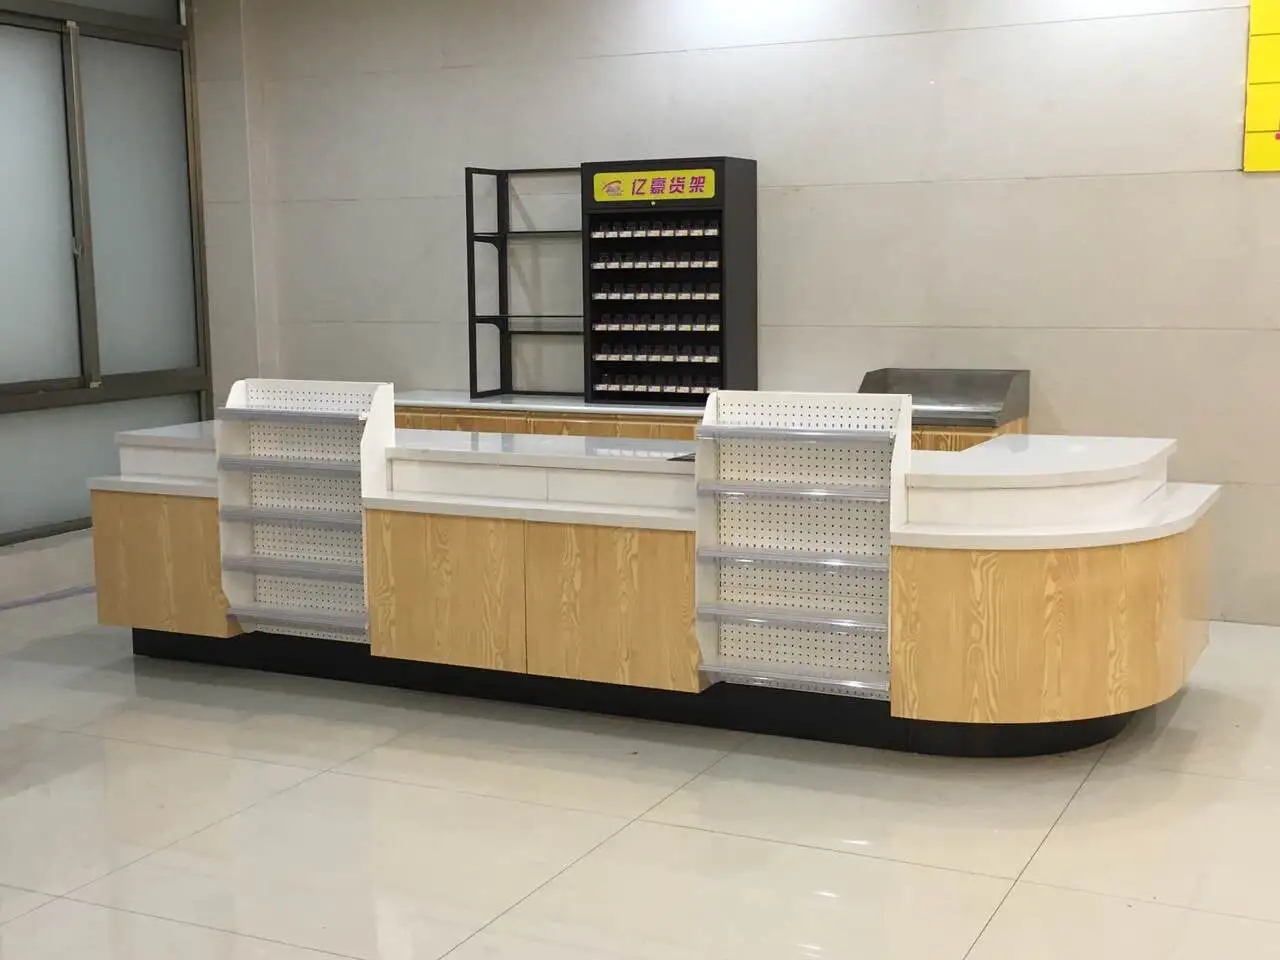 Supermarket Convenience Store Checkout Counter And Retail Checkout Counter Cashier Counters Checkout Desk